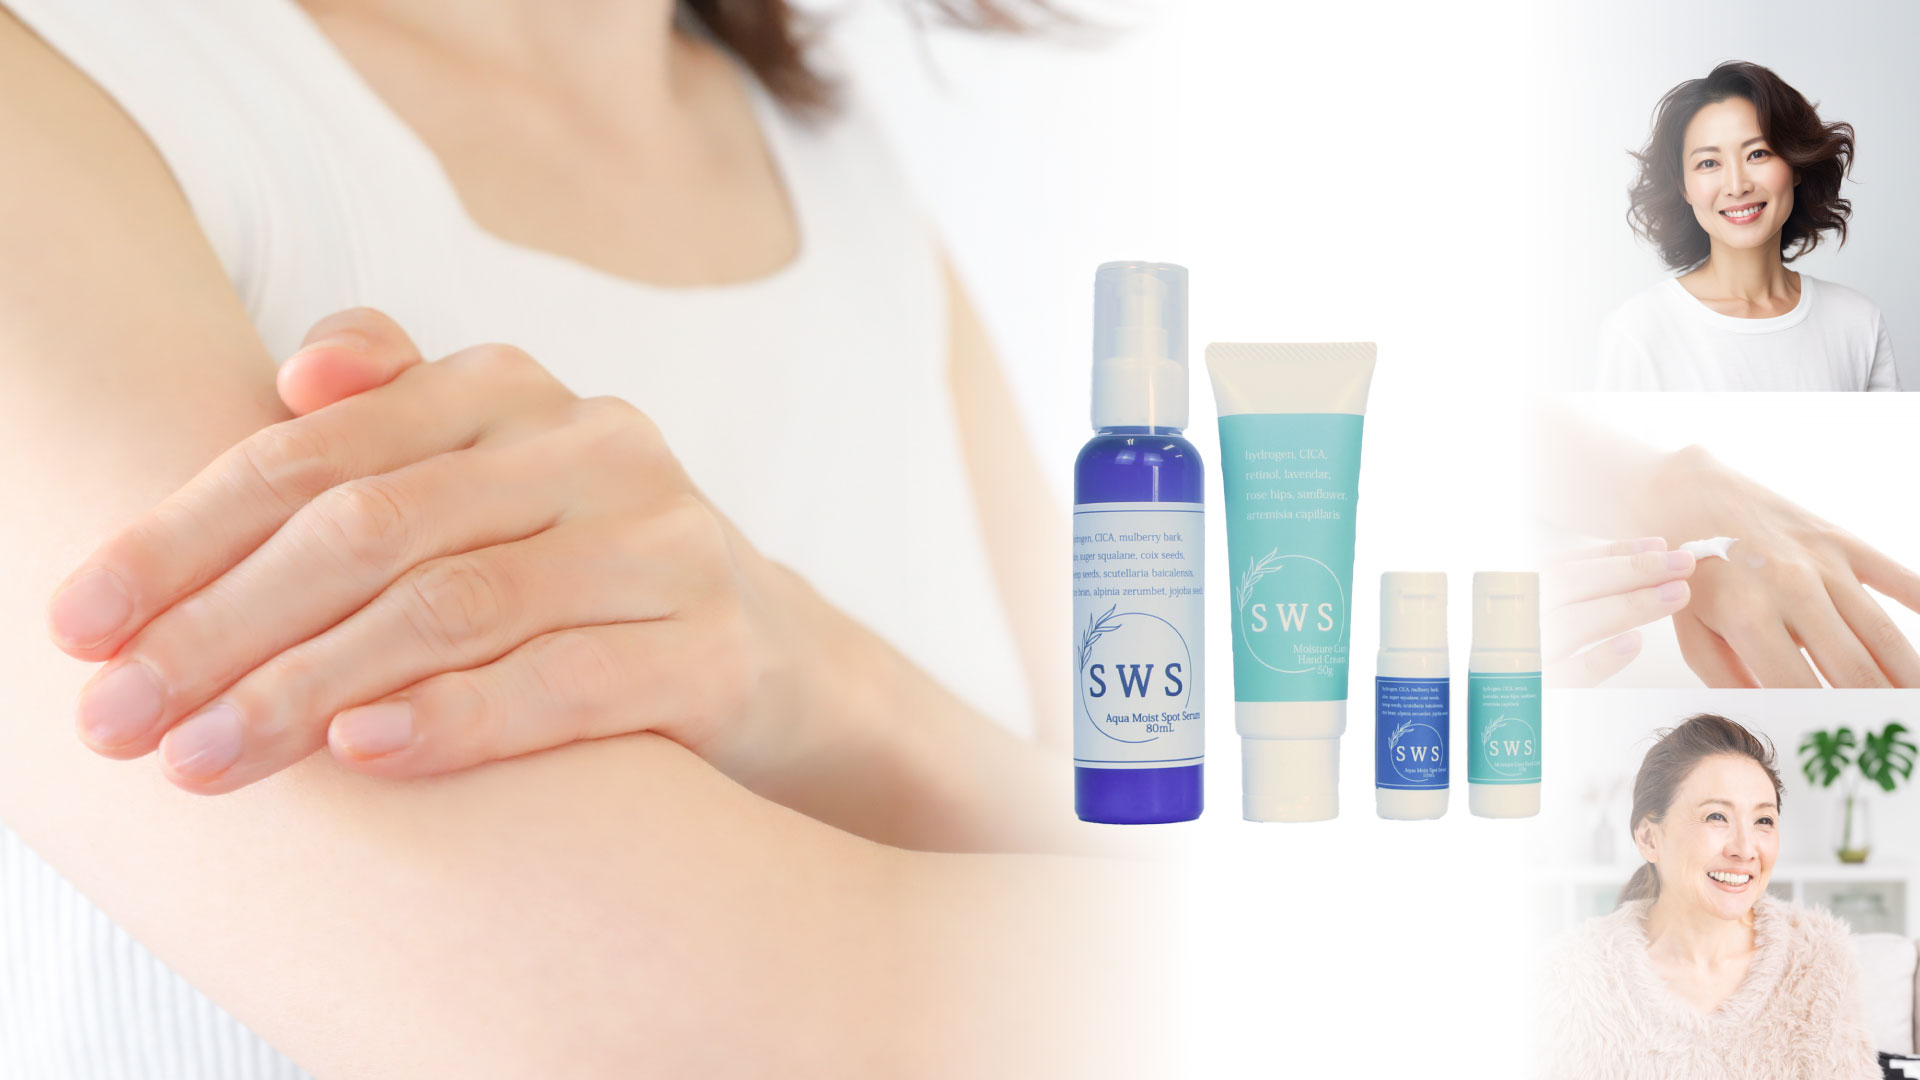 敏感肌方、荒れた肌の方向けに作られた敏感肌専用化粧品「SWS」